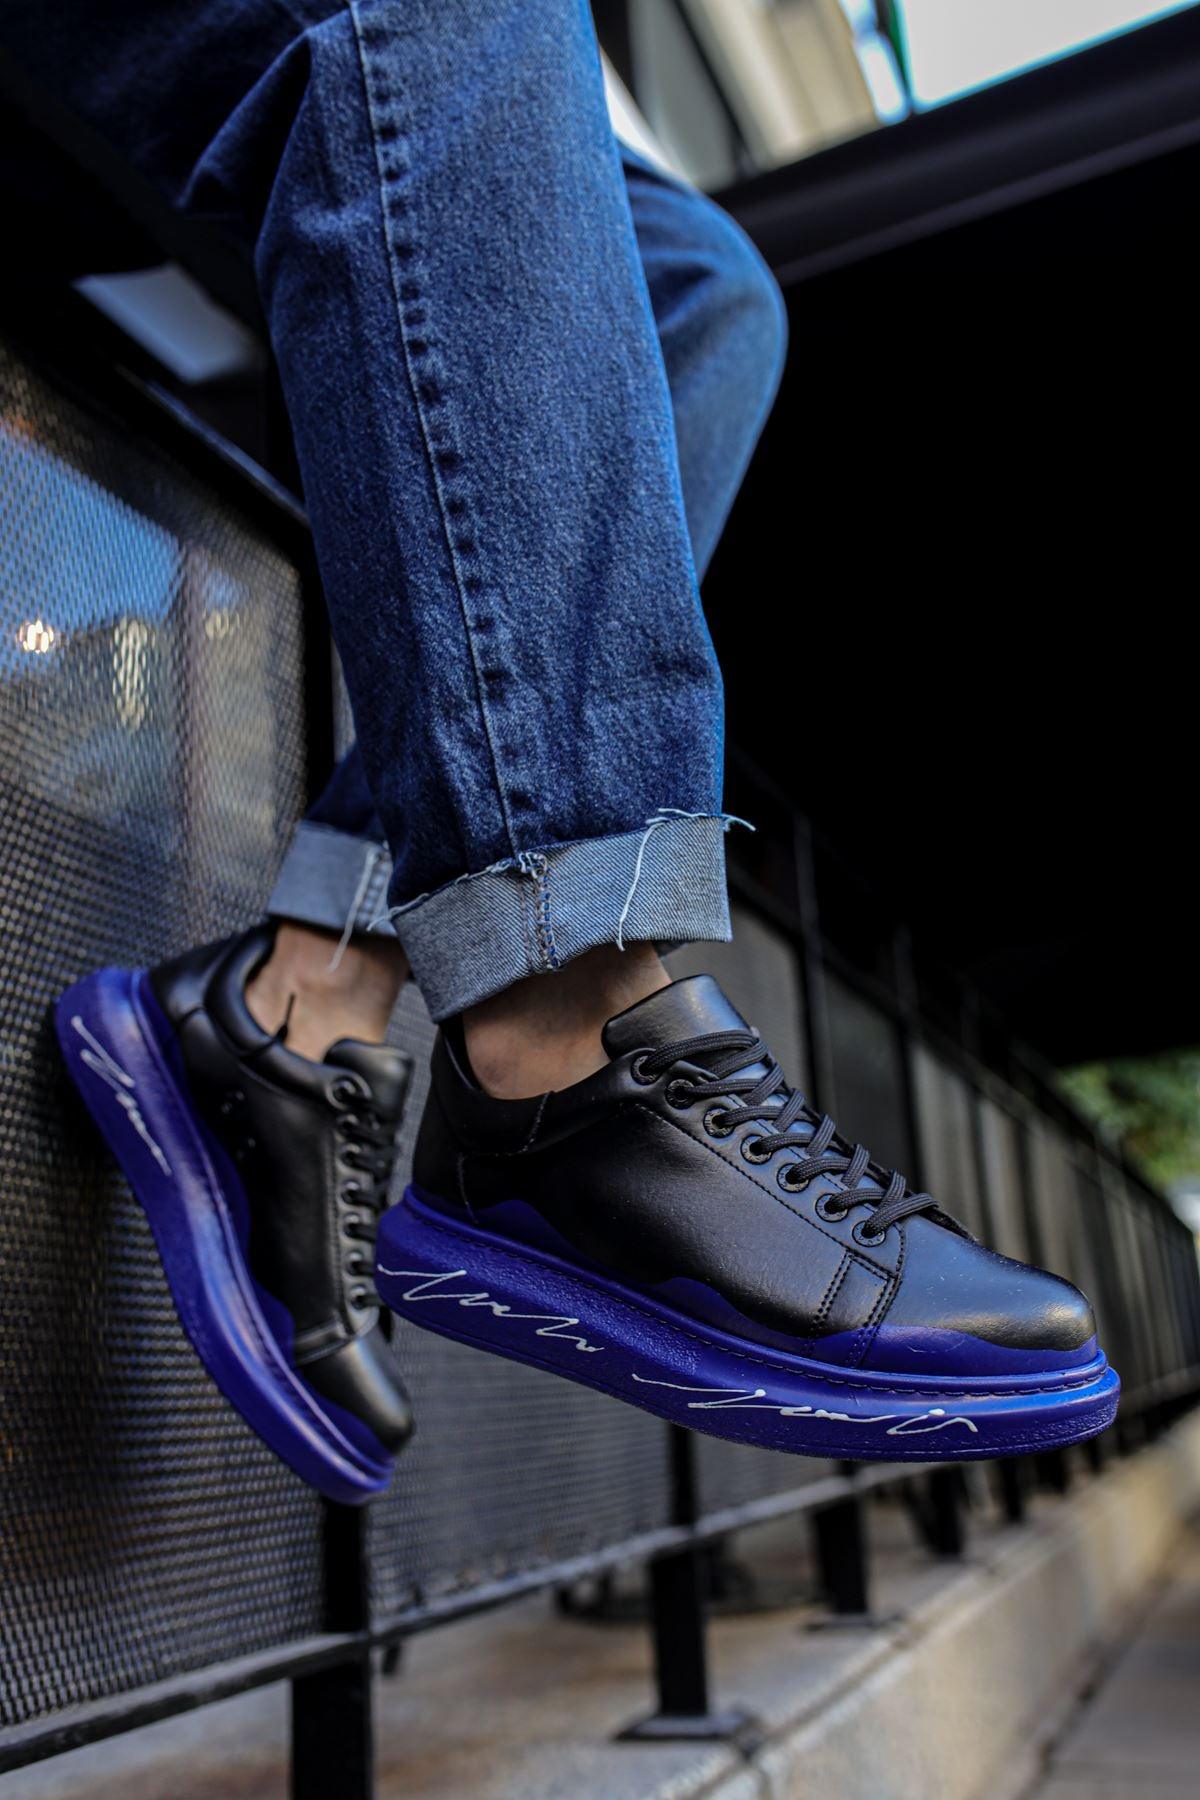 CH254 ST Men's Unisex Shoes 483 BLUE / WHITE SOLE - STREET MODE ™